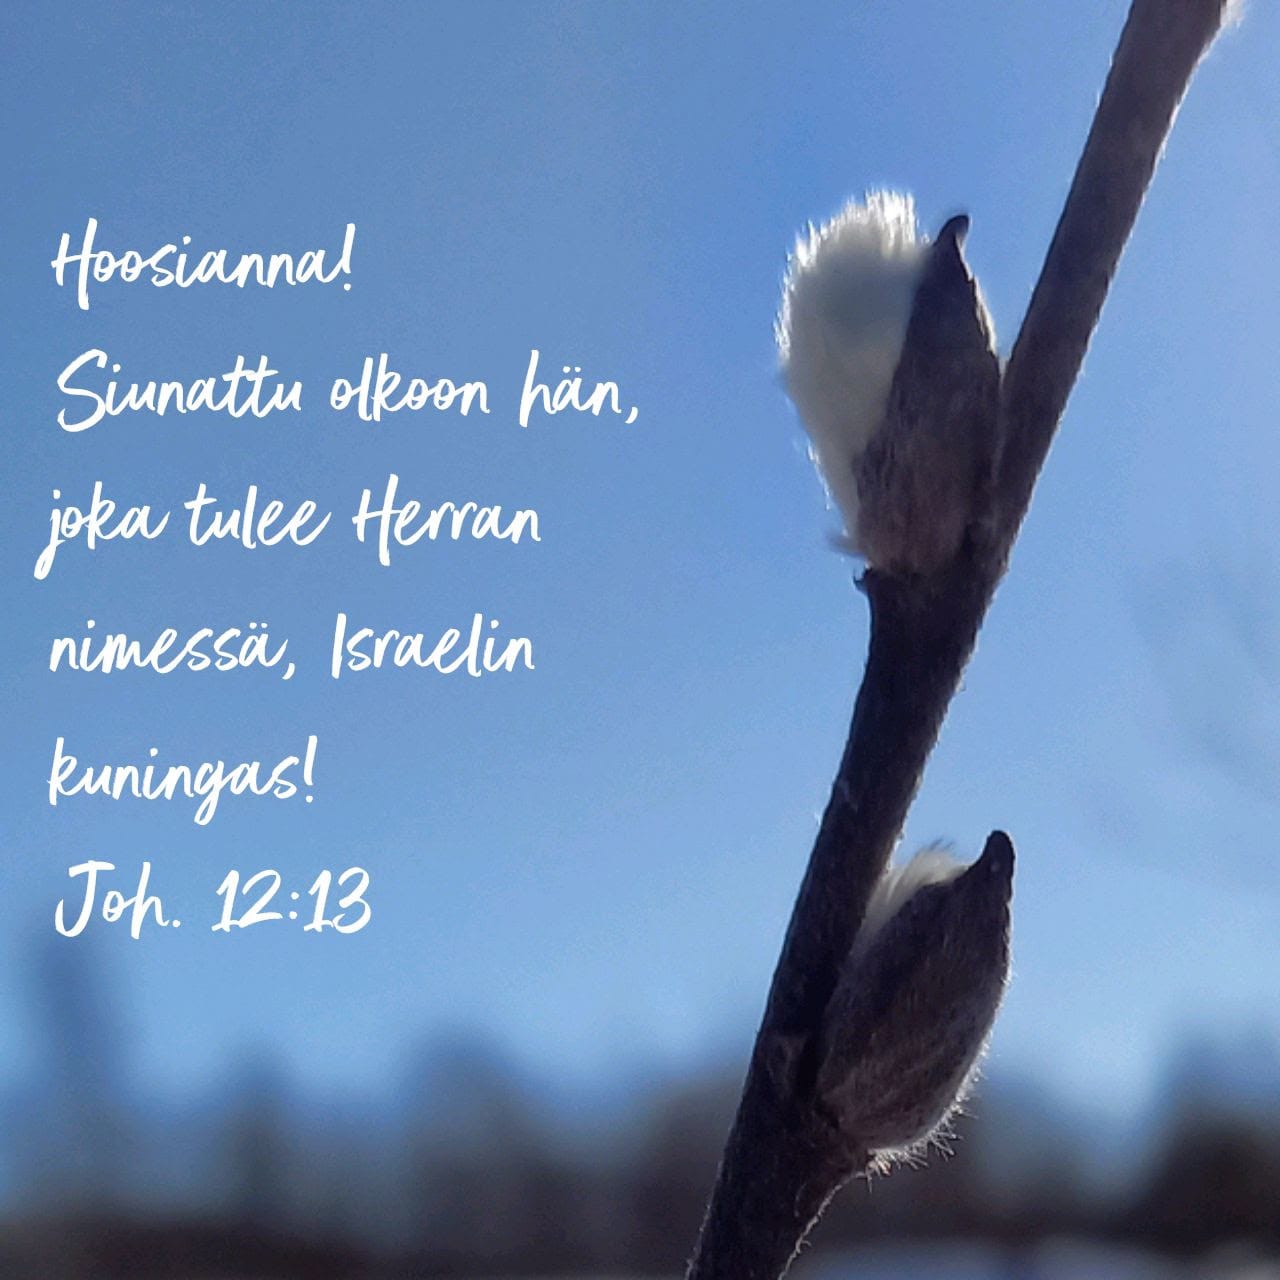 Pajunkissa ja teksti Hoosianna! Siunattu olkoon hän, joka tulee Herran nimessä, Israelin kuningas! Joh.12:13